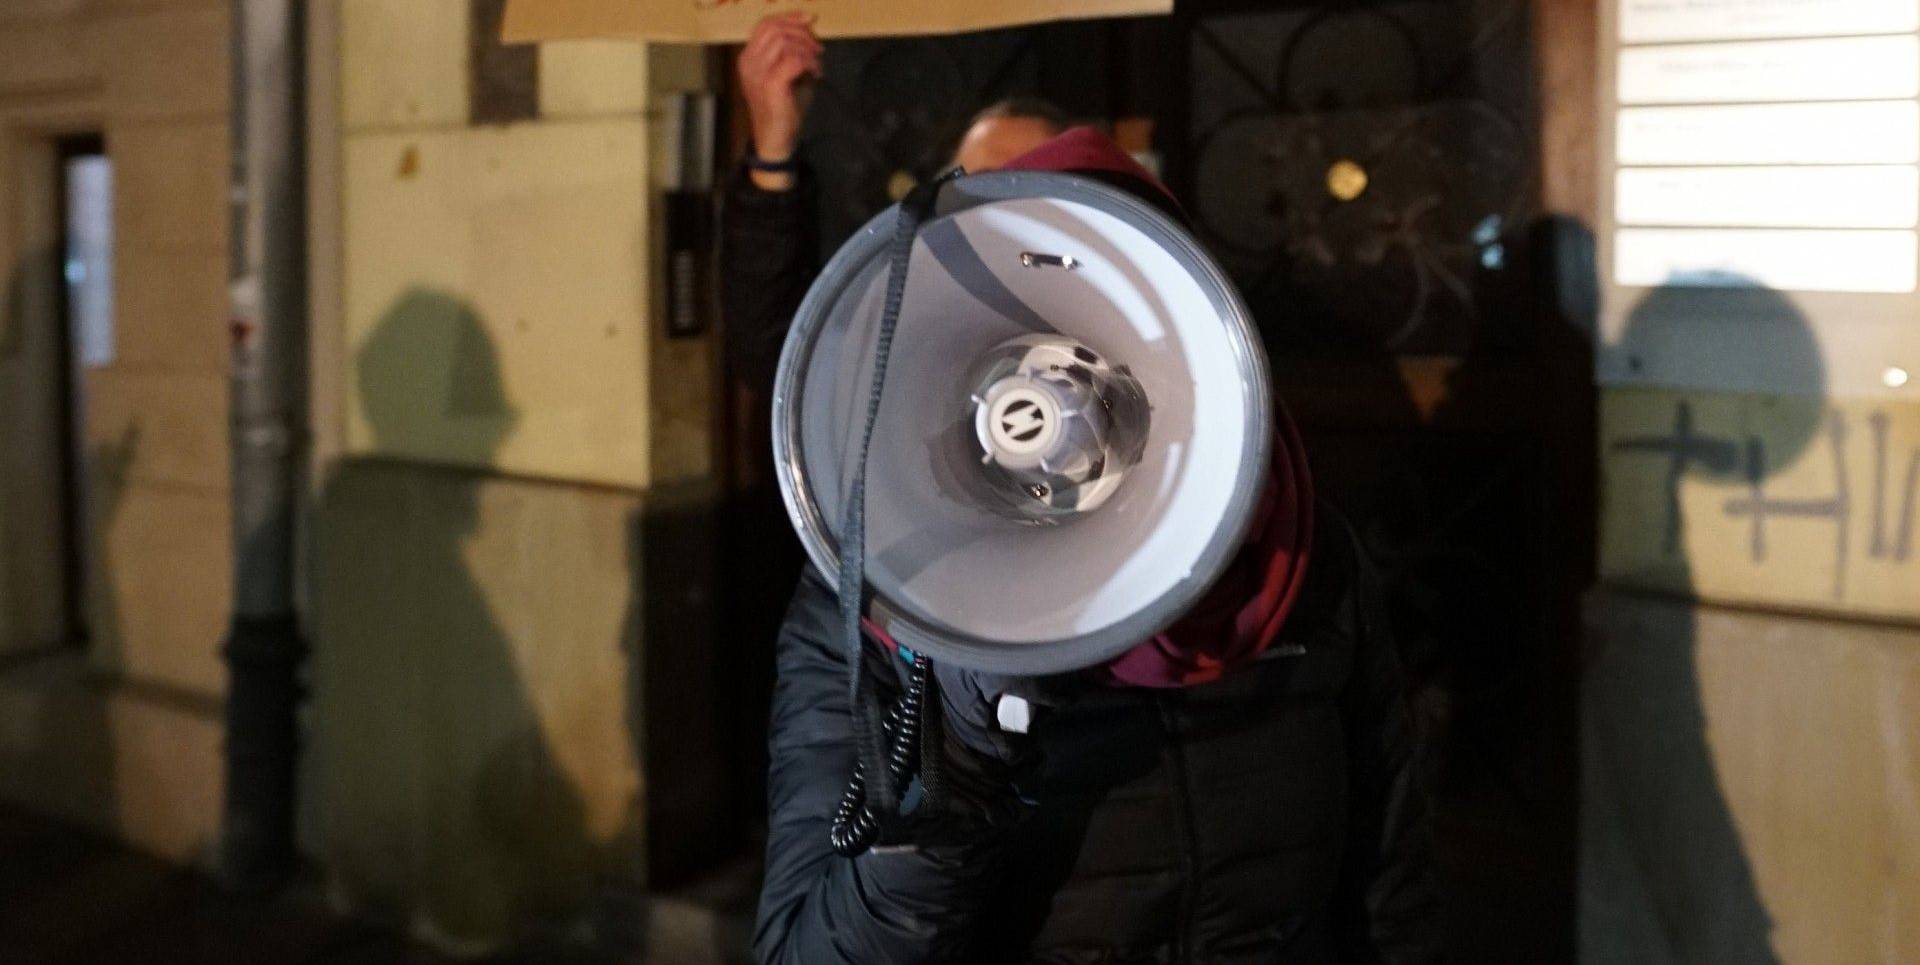 Polityczna dymisja w krakowskiej policji? Demonstranci przeszkadzali Kaczyńskiemu, policja nie zabrała im megafonu